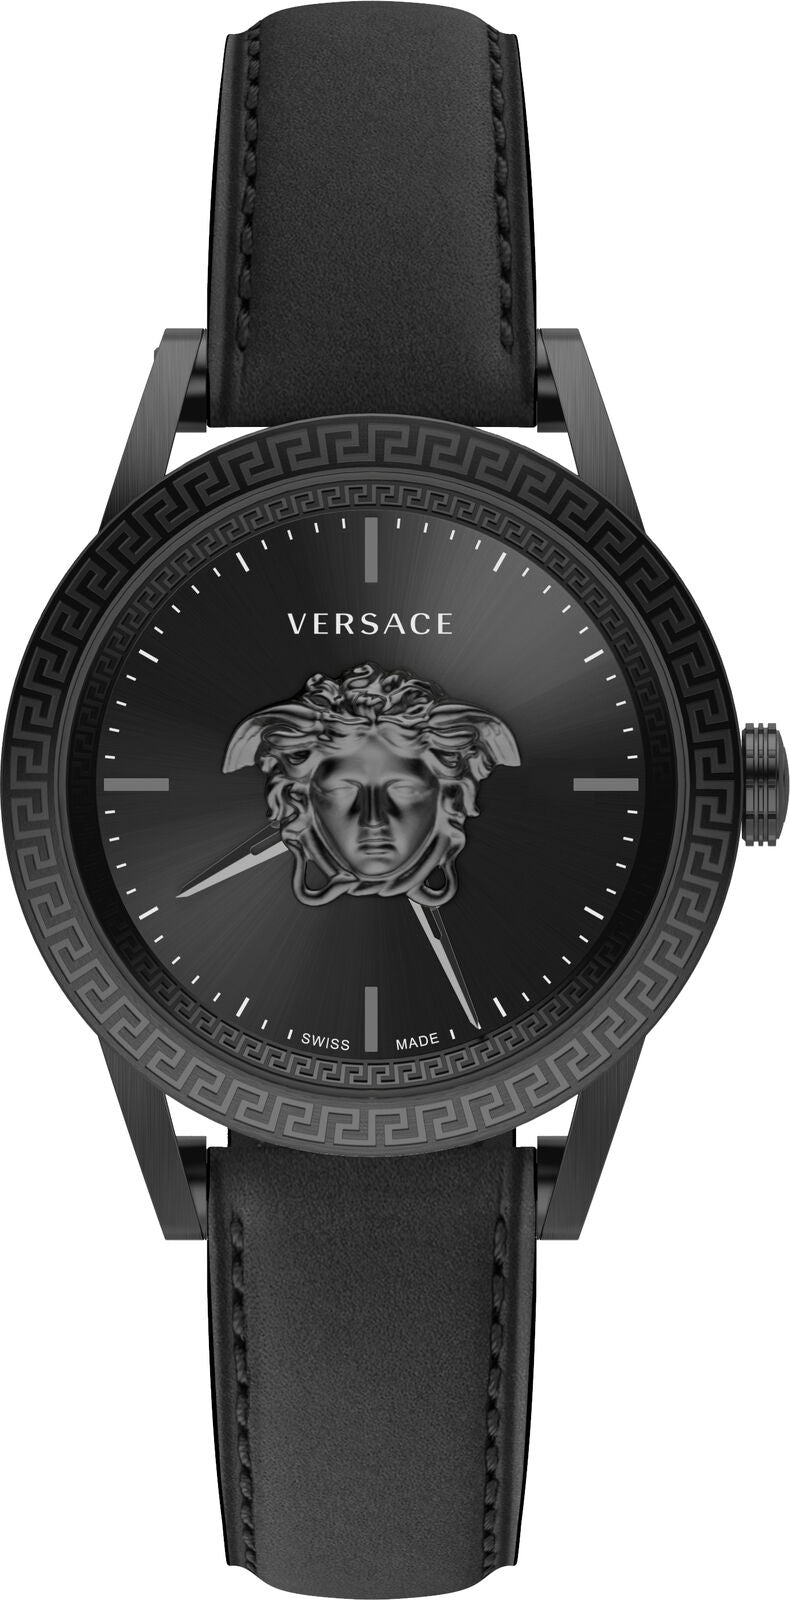 Versace Men's Watch Palazzo Empire 43mm IP Black VERD01520